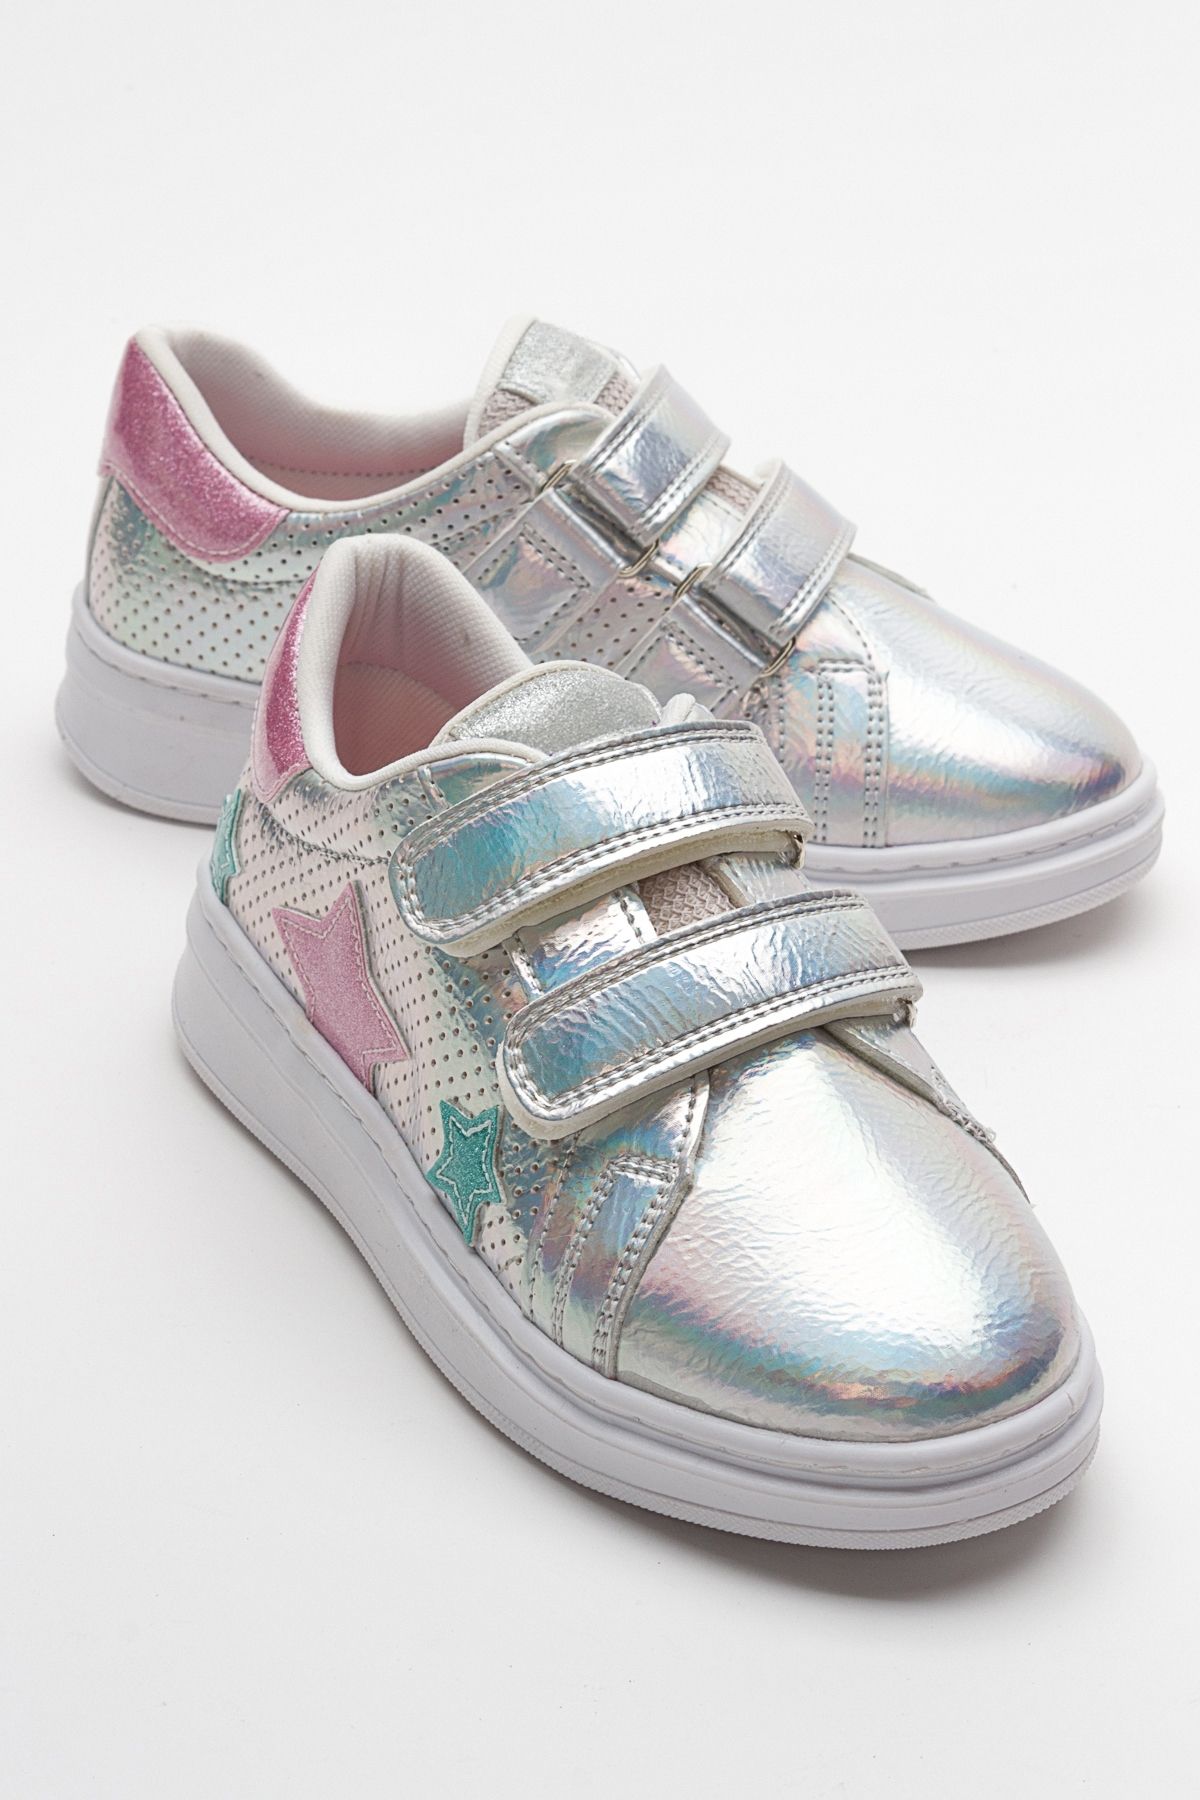 mnpc Kız Çocuk Gümüş Sneaker Ayakkabı